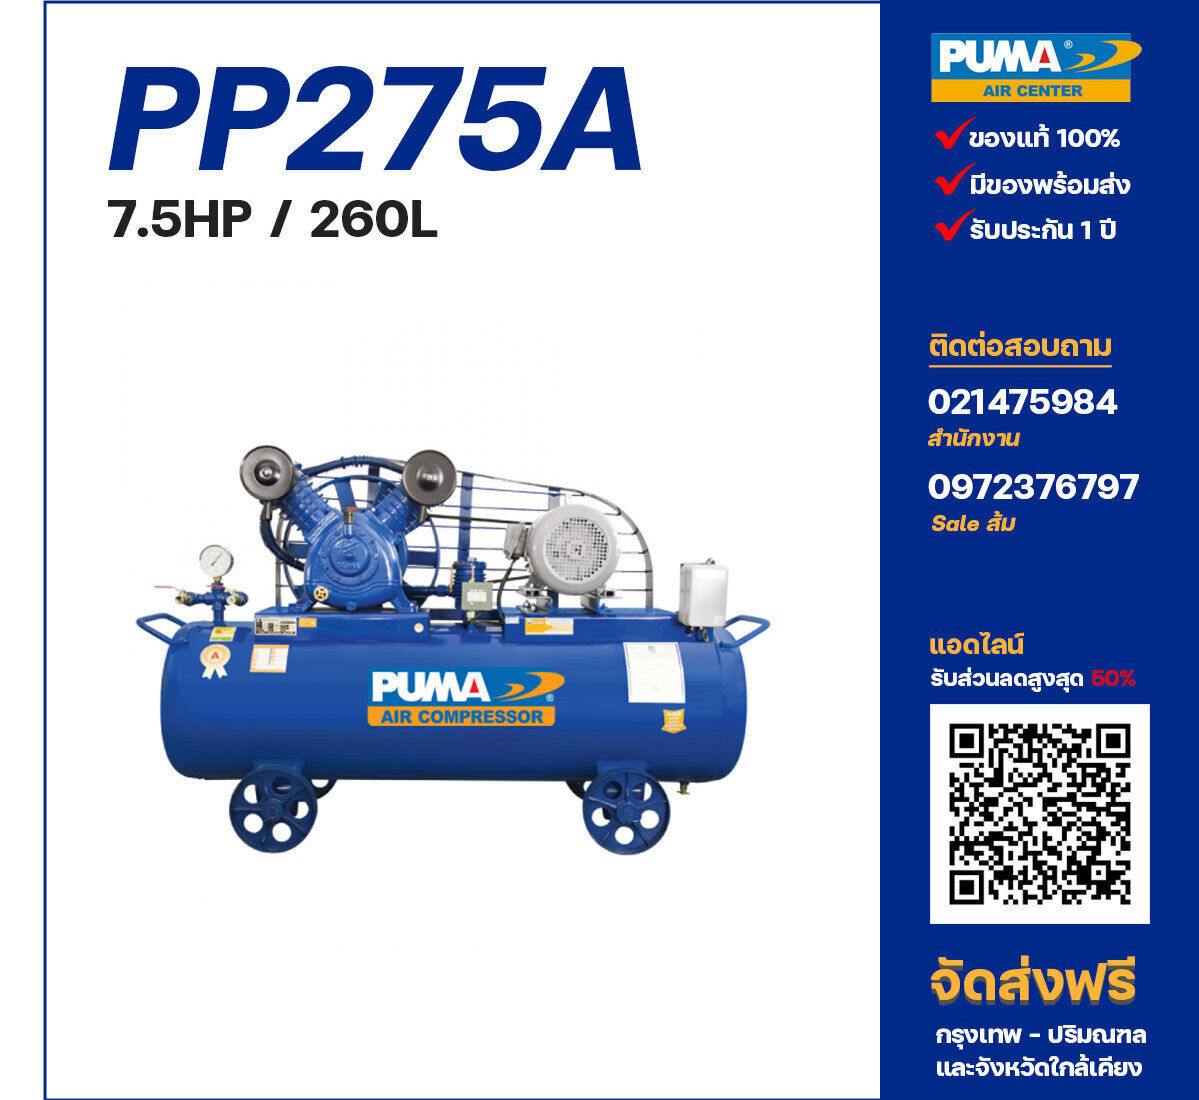 ปั๊มลมพูม่า PUMA รุ่น PP275A ขนาด 7.5 แรงม้า / 260 ลิตร